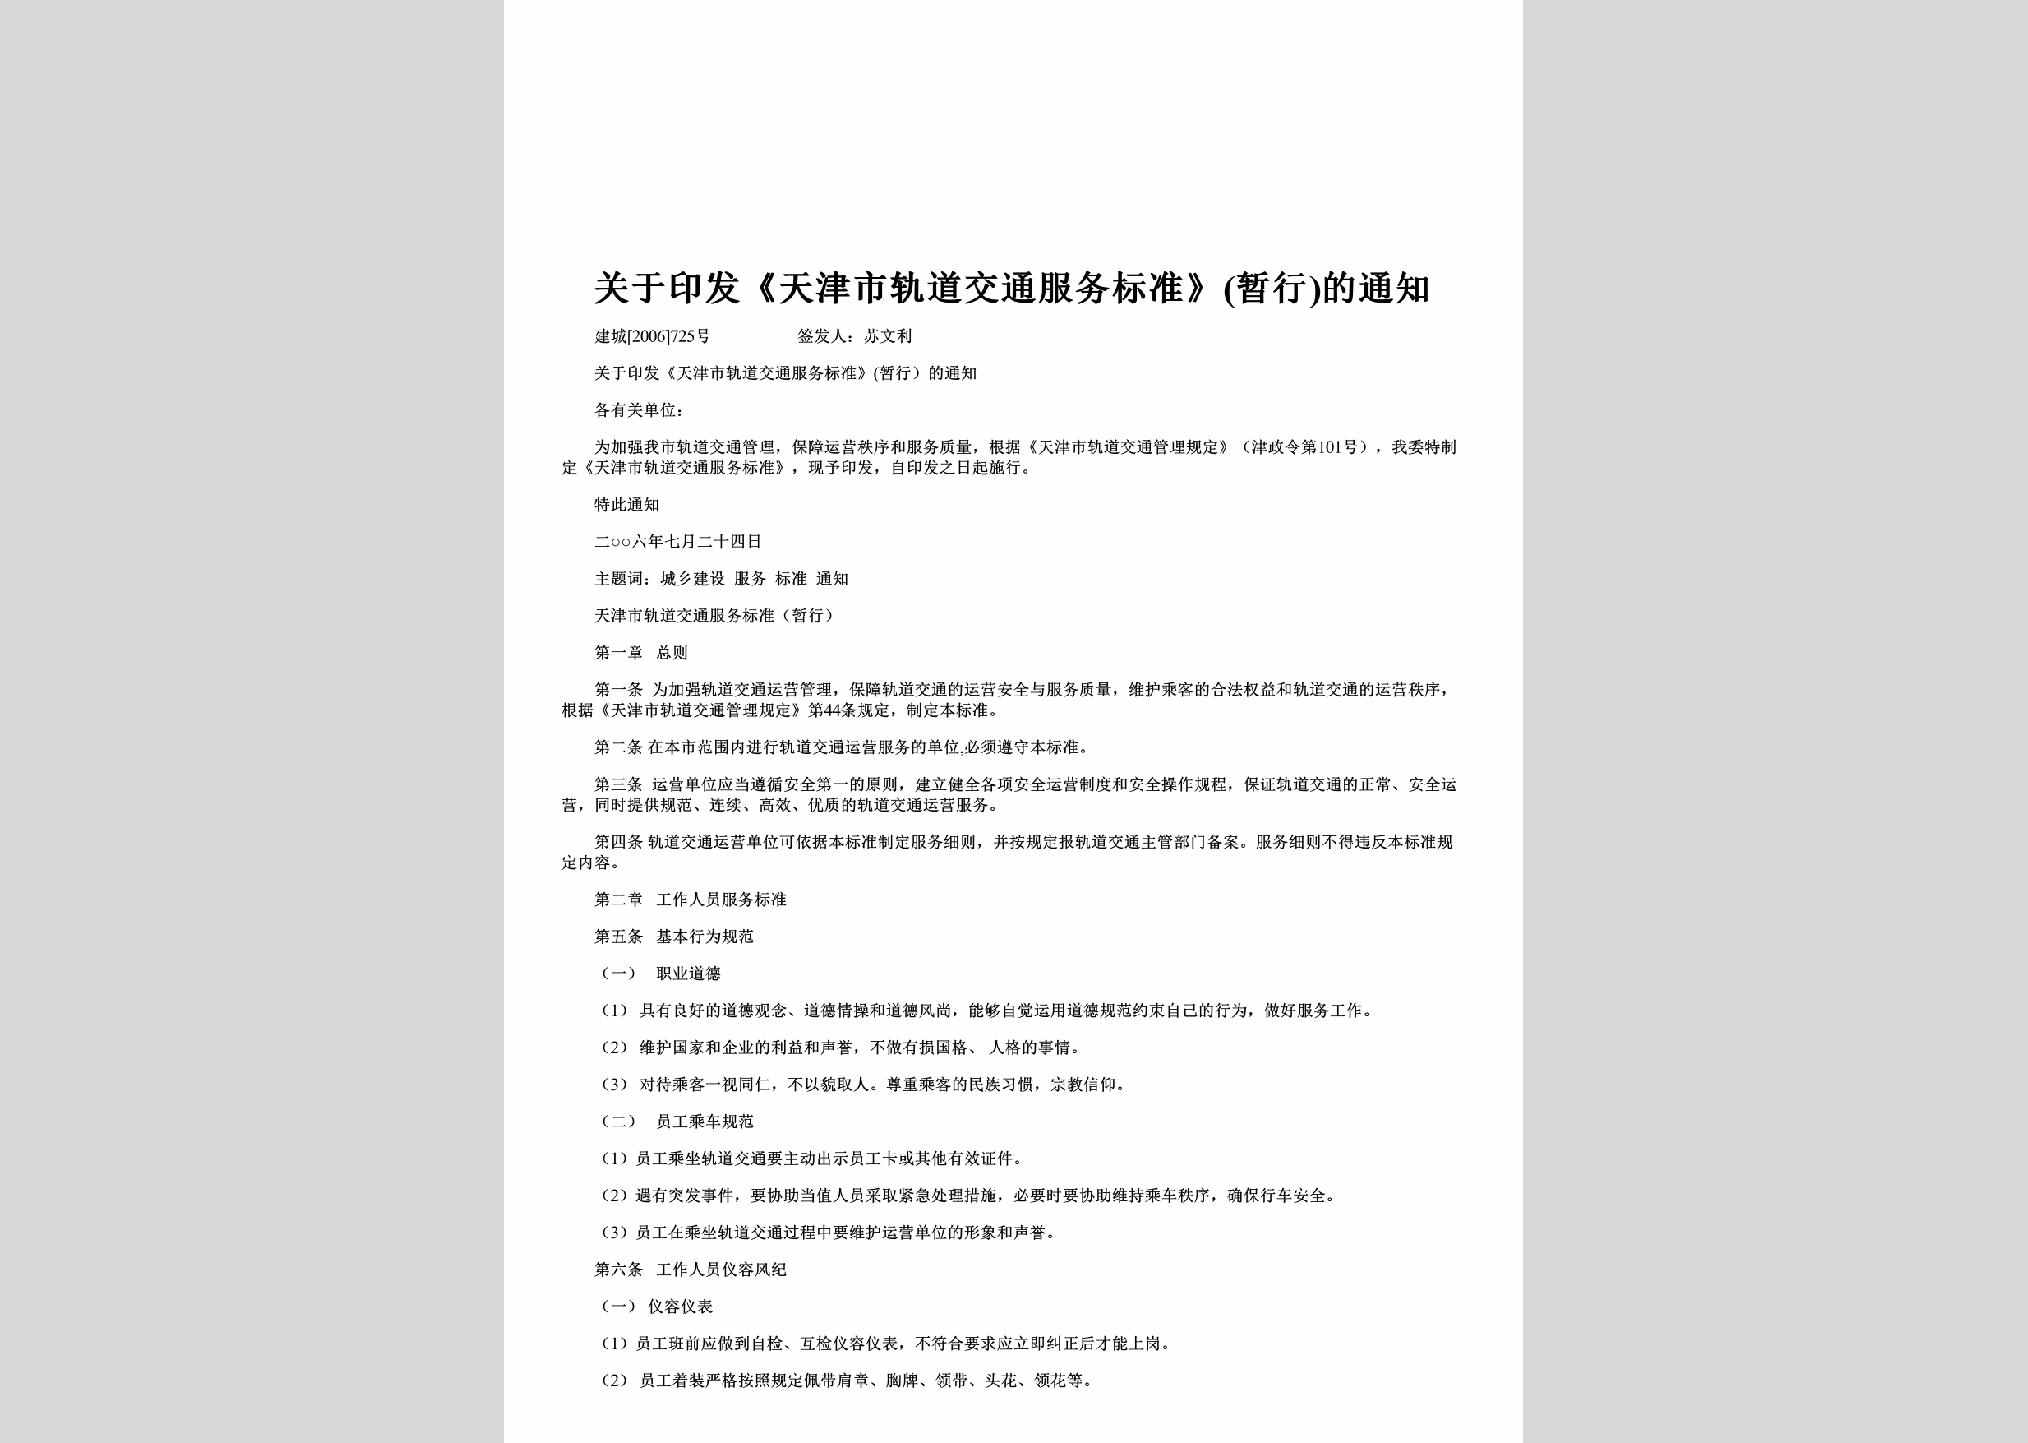 建城[2006]725号：关于印发《天津市轨道交通服务标准》(暂行)的通知